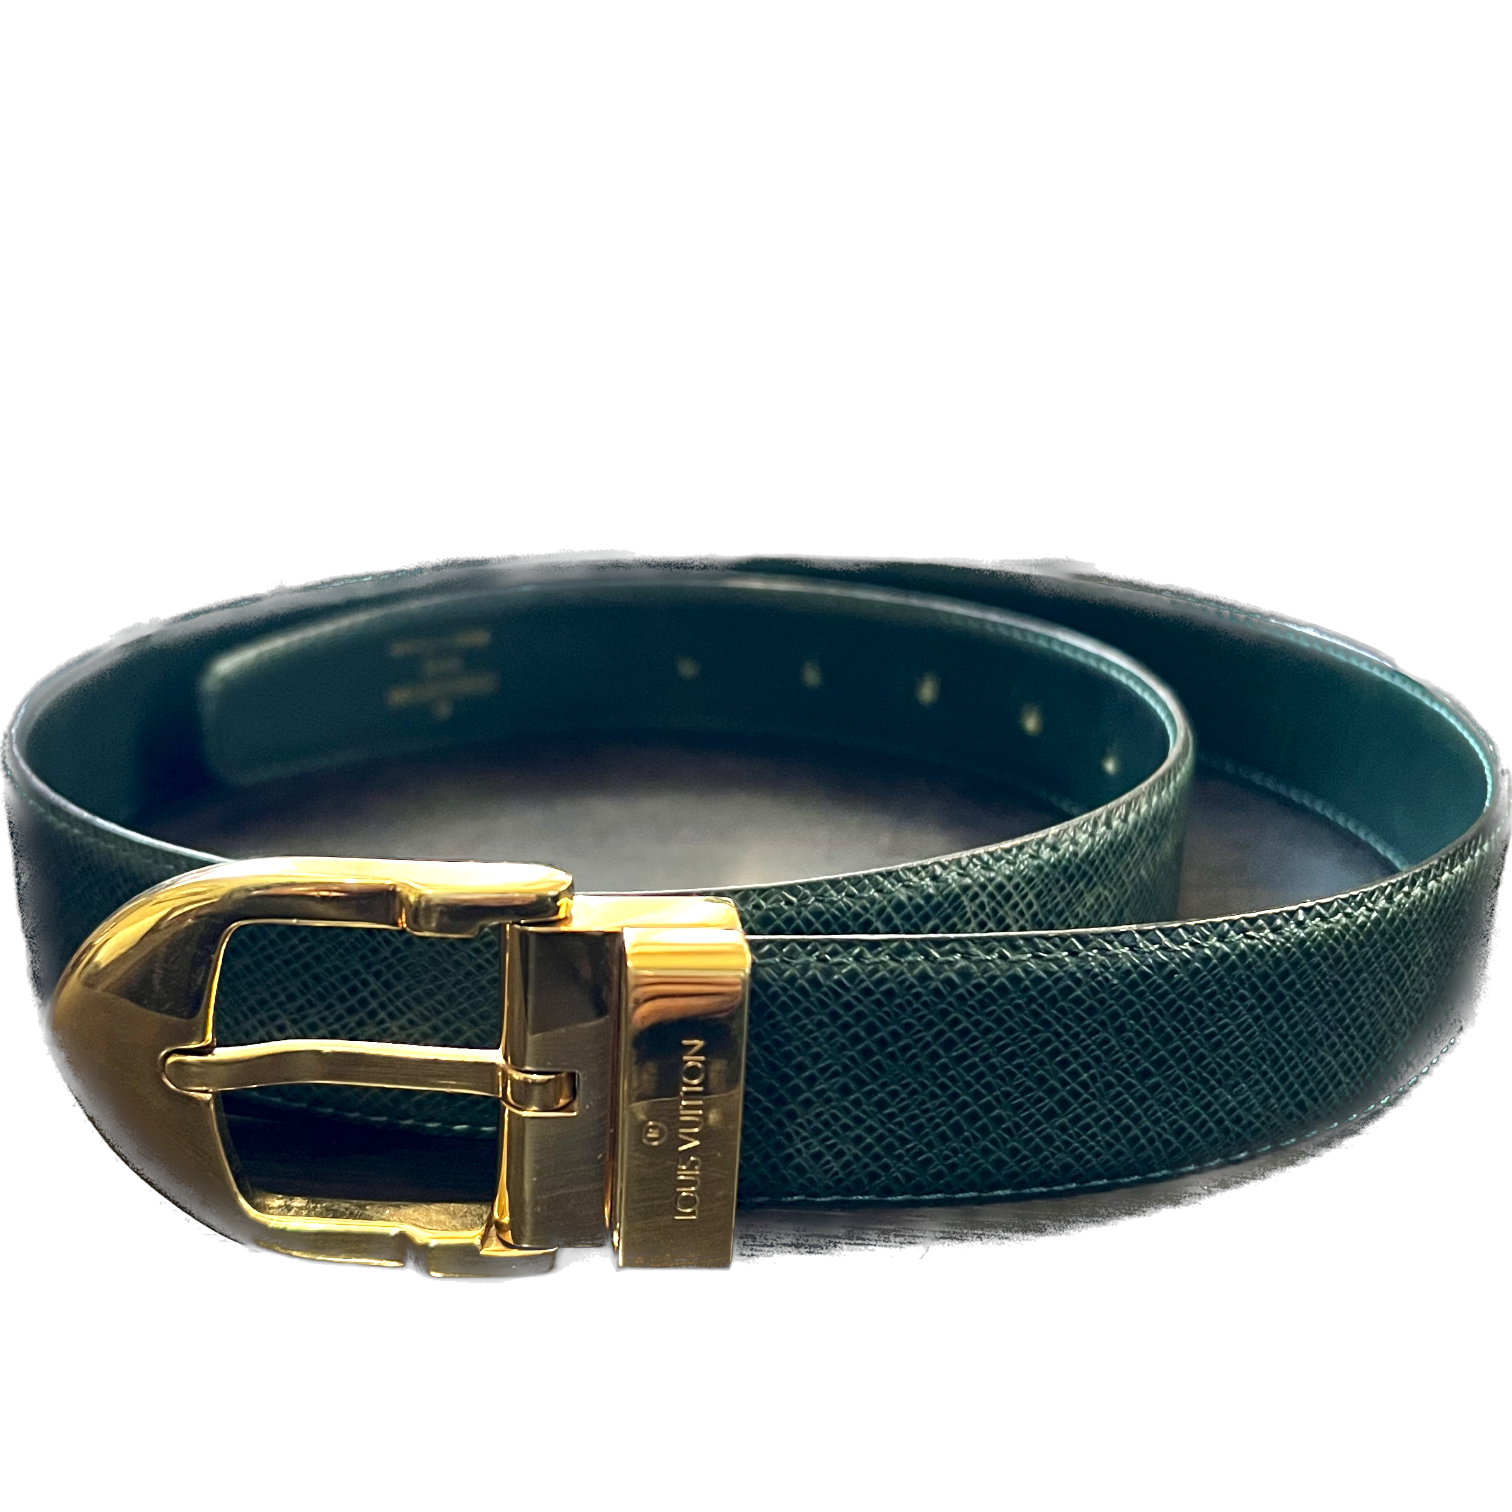 Louis Vuitton Gold Buckle Damier Belt Genuine Leather Black, Men's